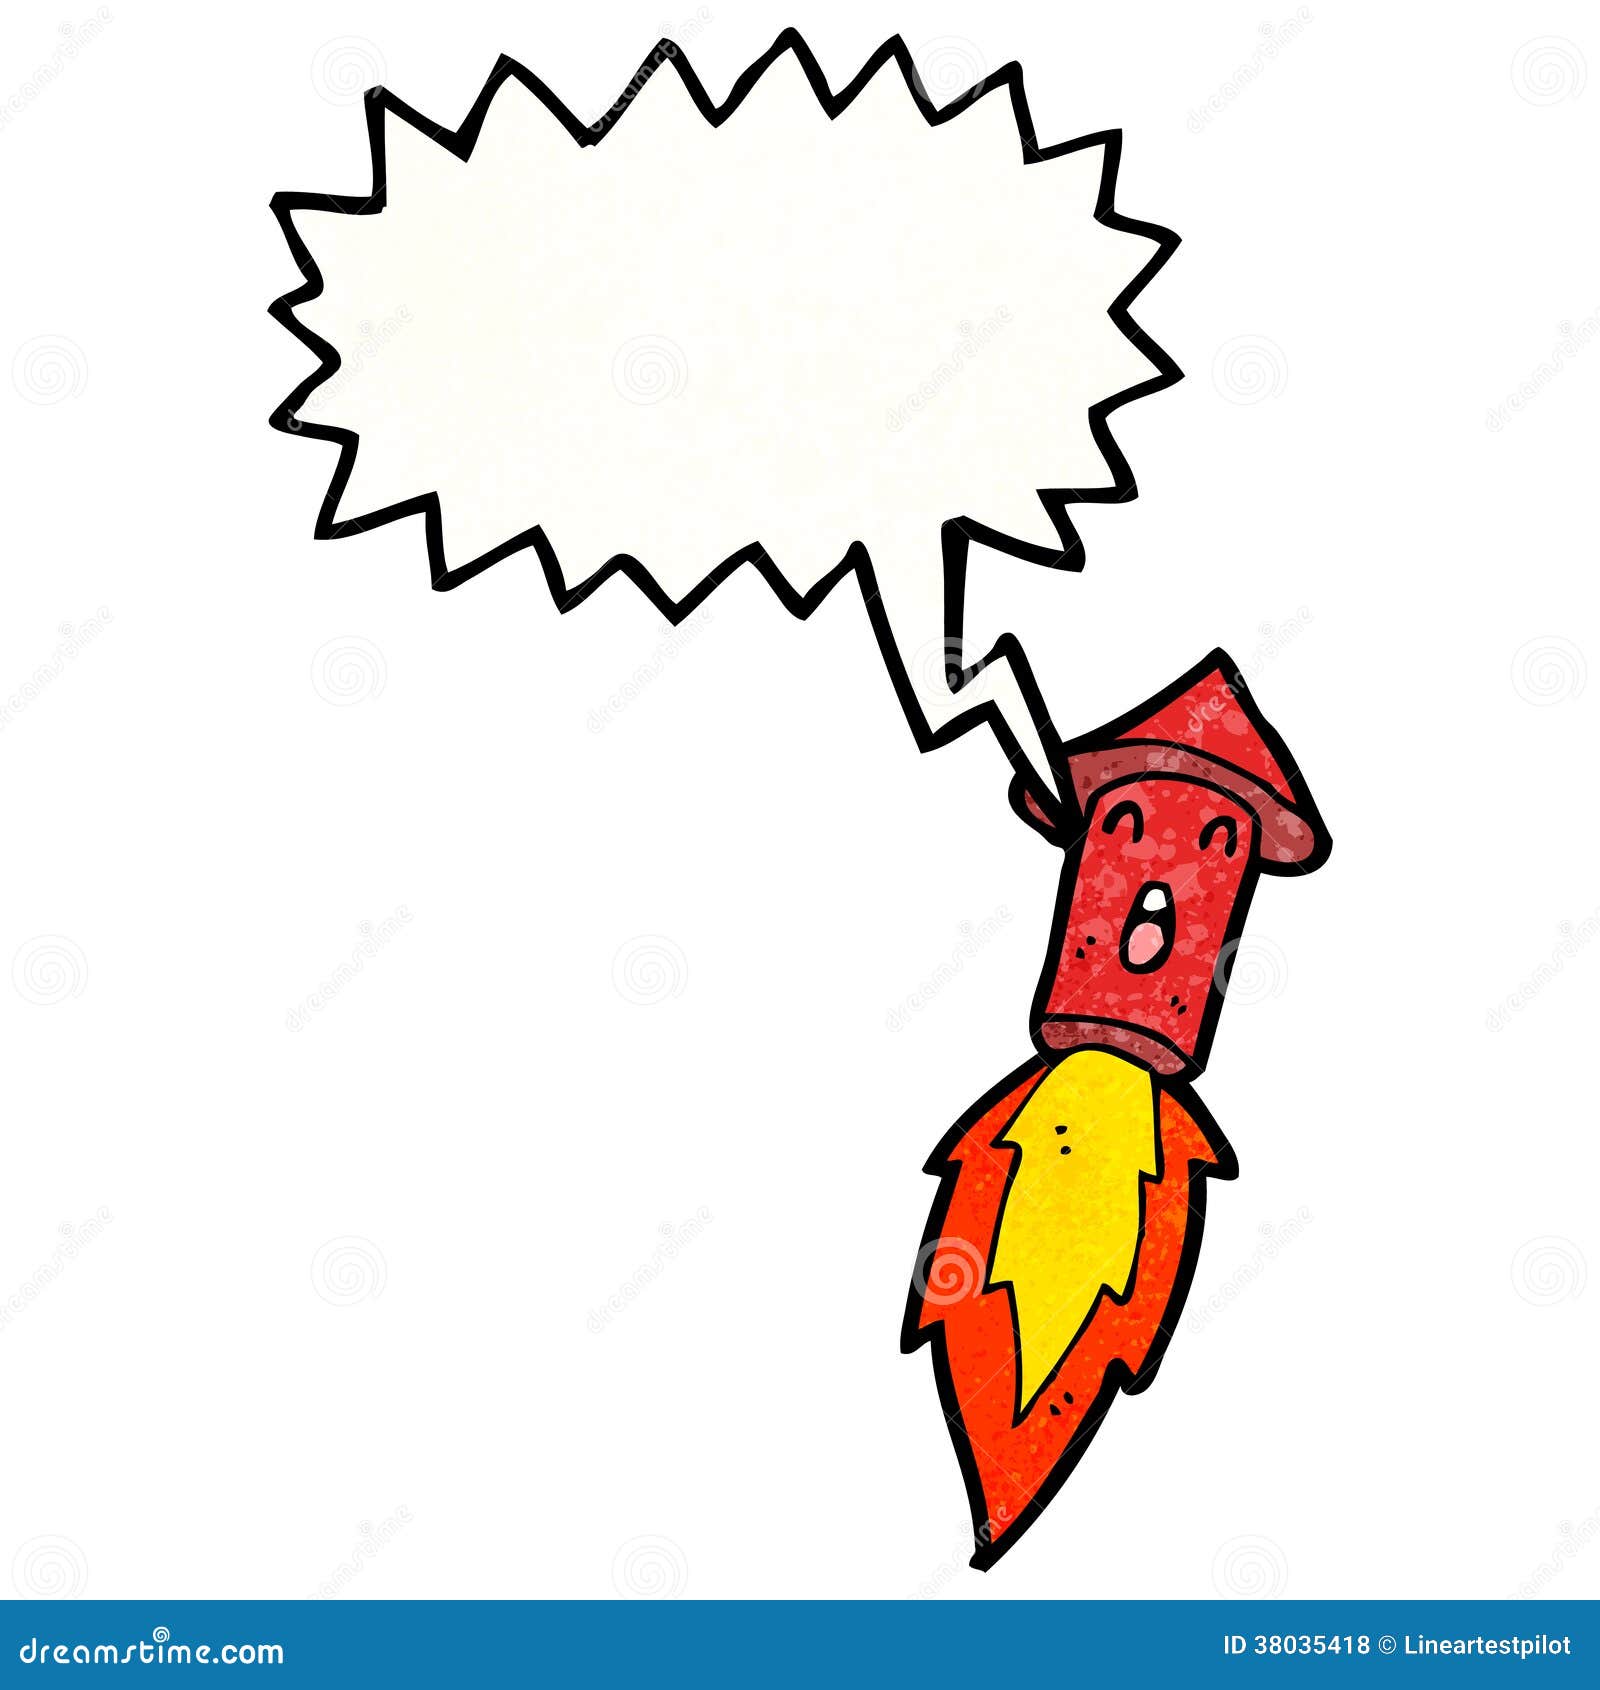 Cartoon firework rocket stock vector. Illustration of cartoon - 38035418